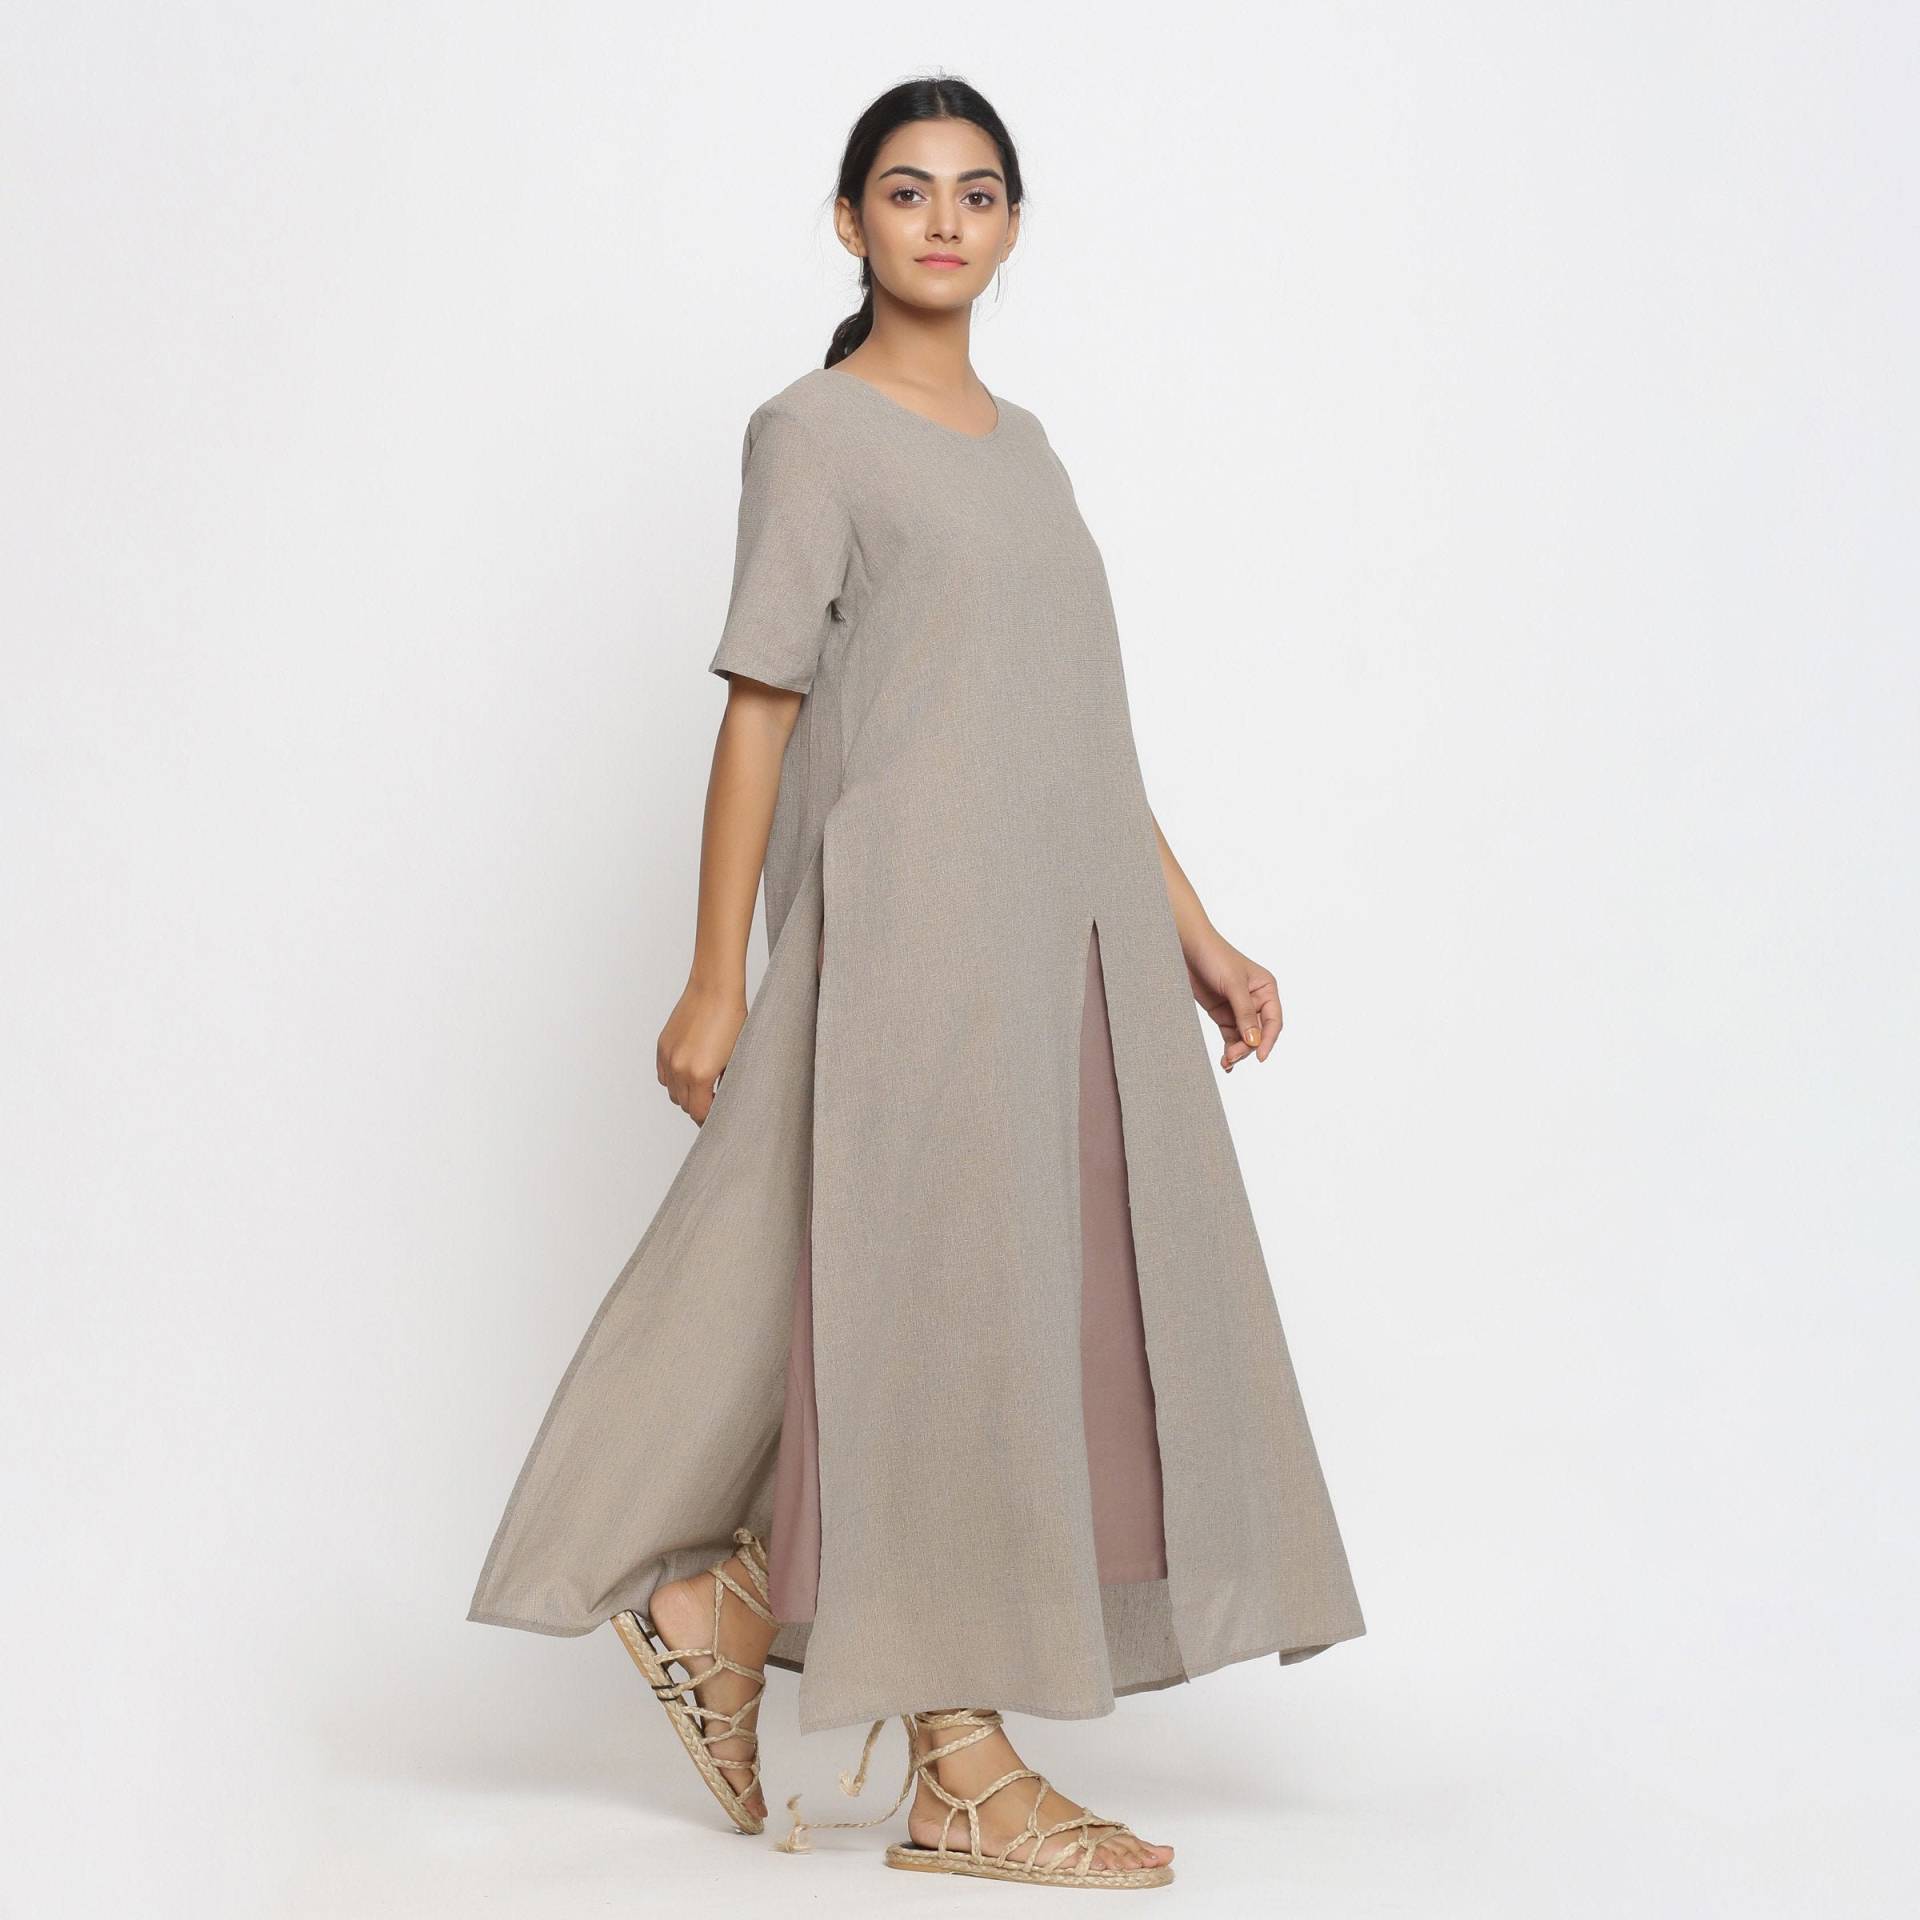 Beige Baumwolle A-Line Maxi Kleid, Anpassbares Kleid Für Frauen, Schlitz Mit Taschen, Rundhals Plus Size, Petite, Tall Etsw von SeamsFriendlyIndia